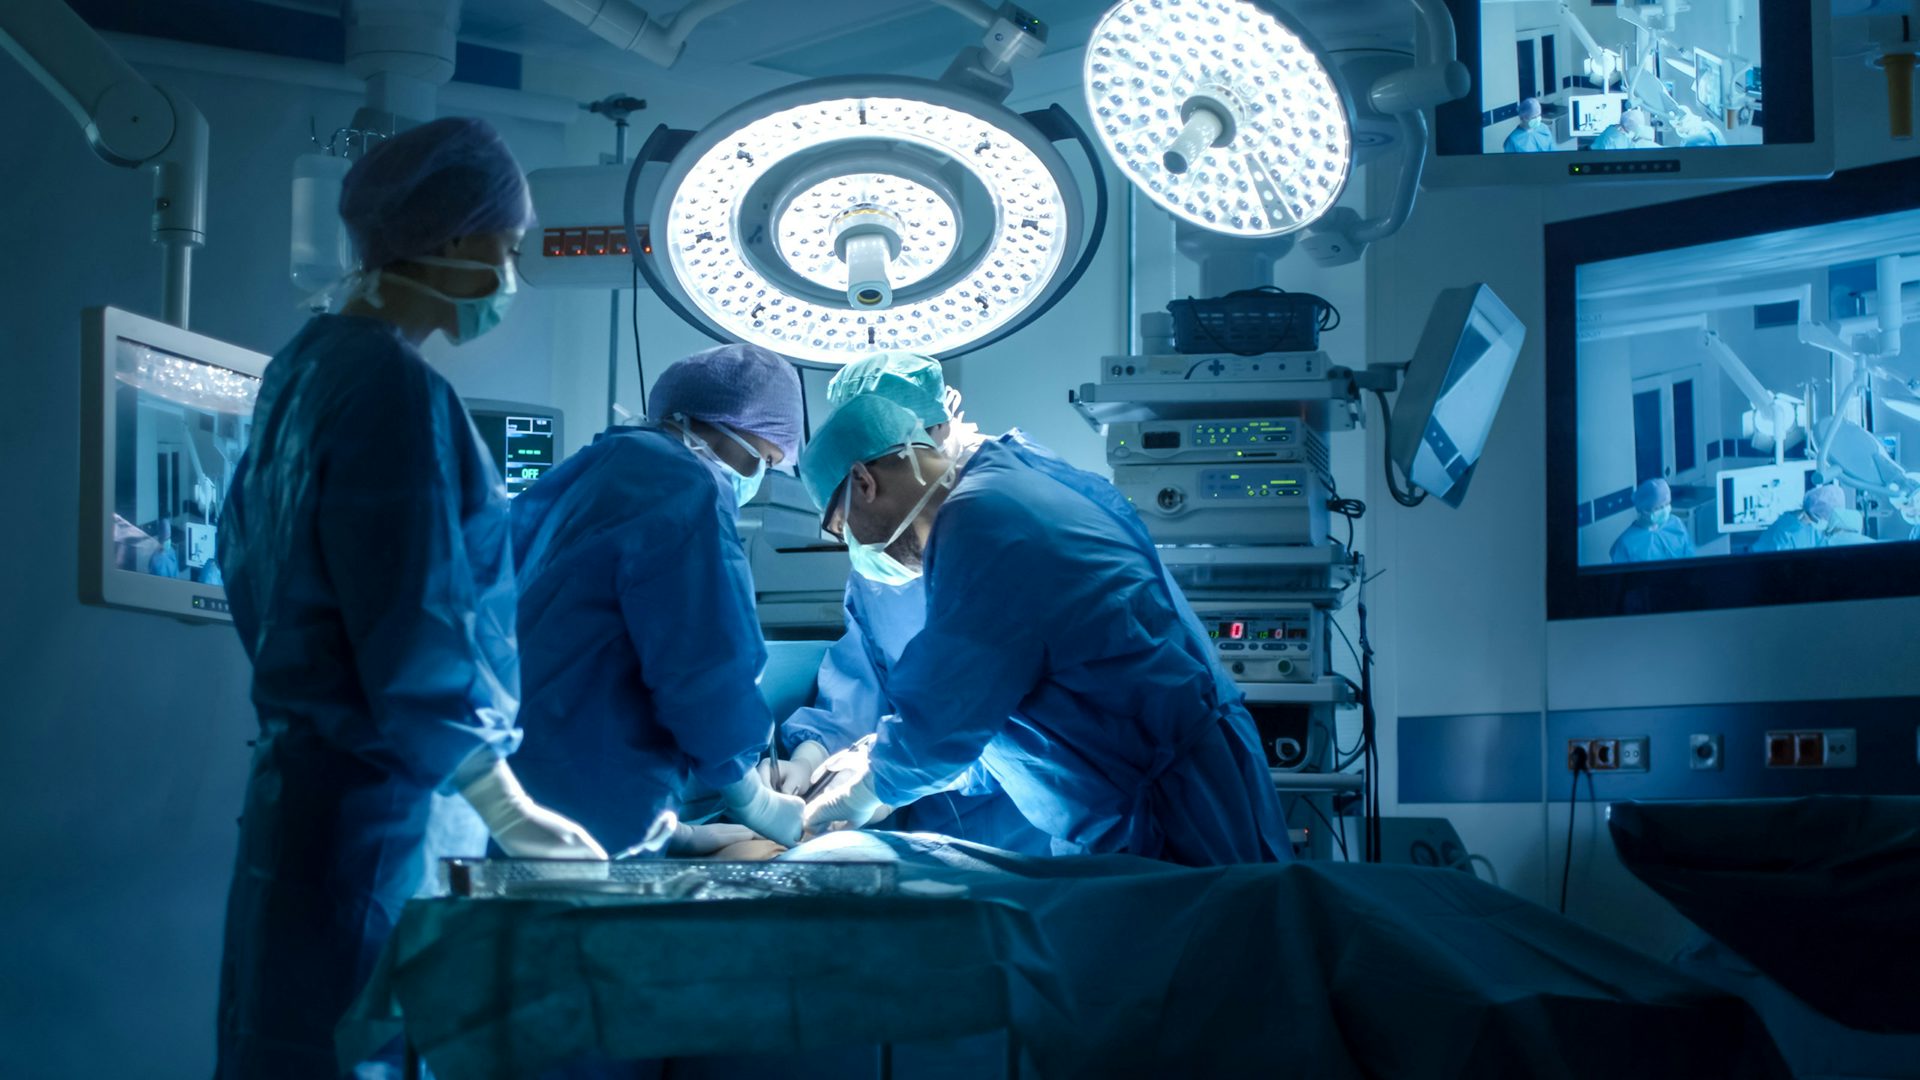 Chirurgové provádějící operace na operačním sále: Tým zkušených chirurgů provádějících lékařský zákrok na sterilním operačním sále.